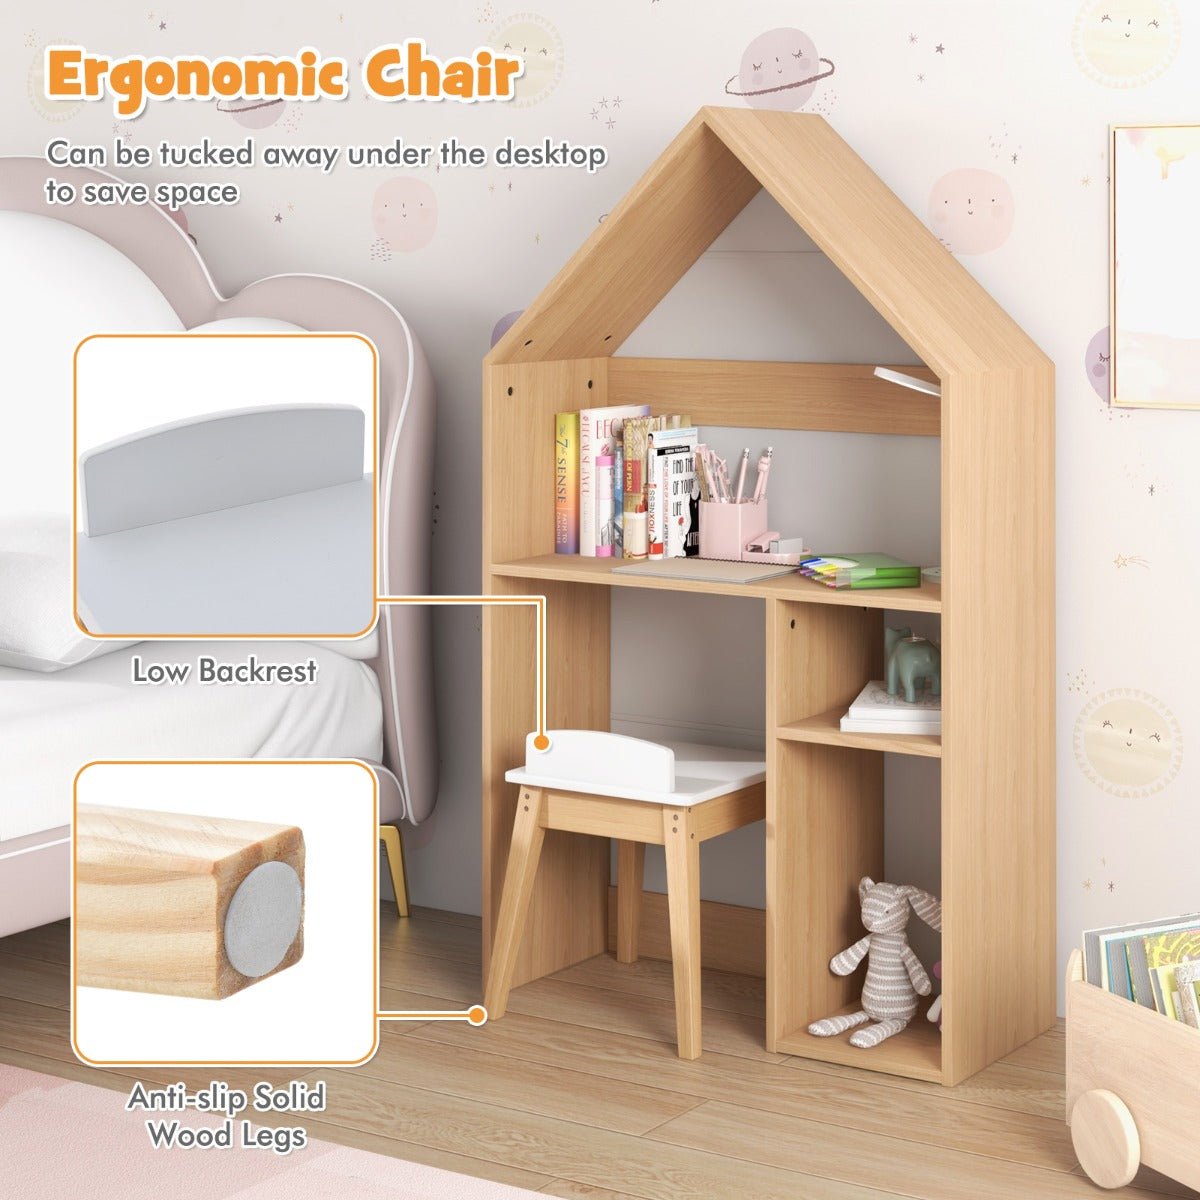 Adorable Desk for Children's Playroom or Bedroom